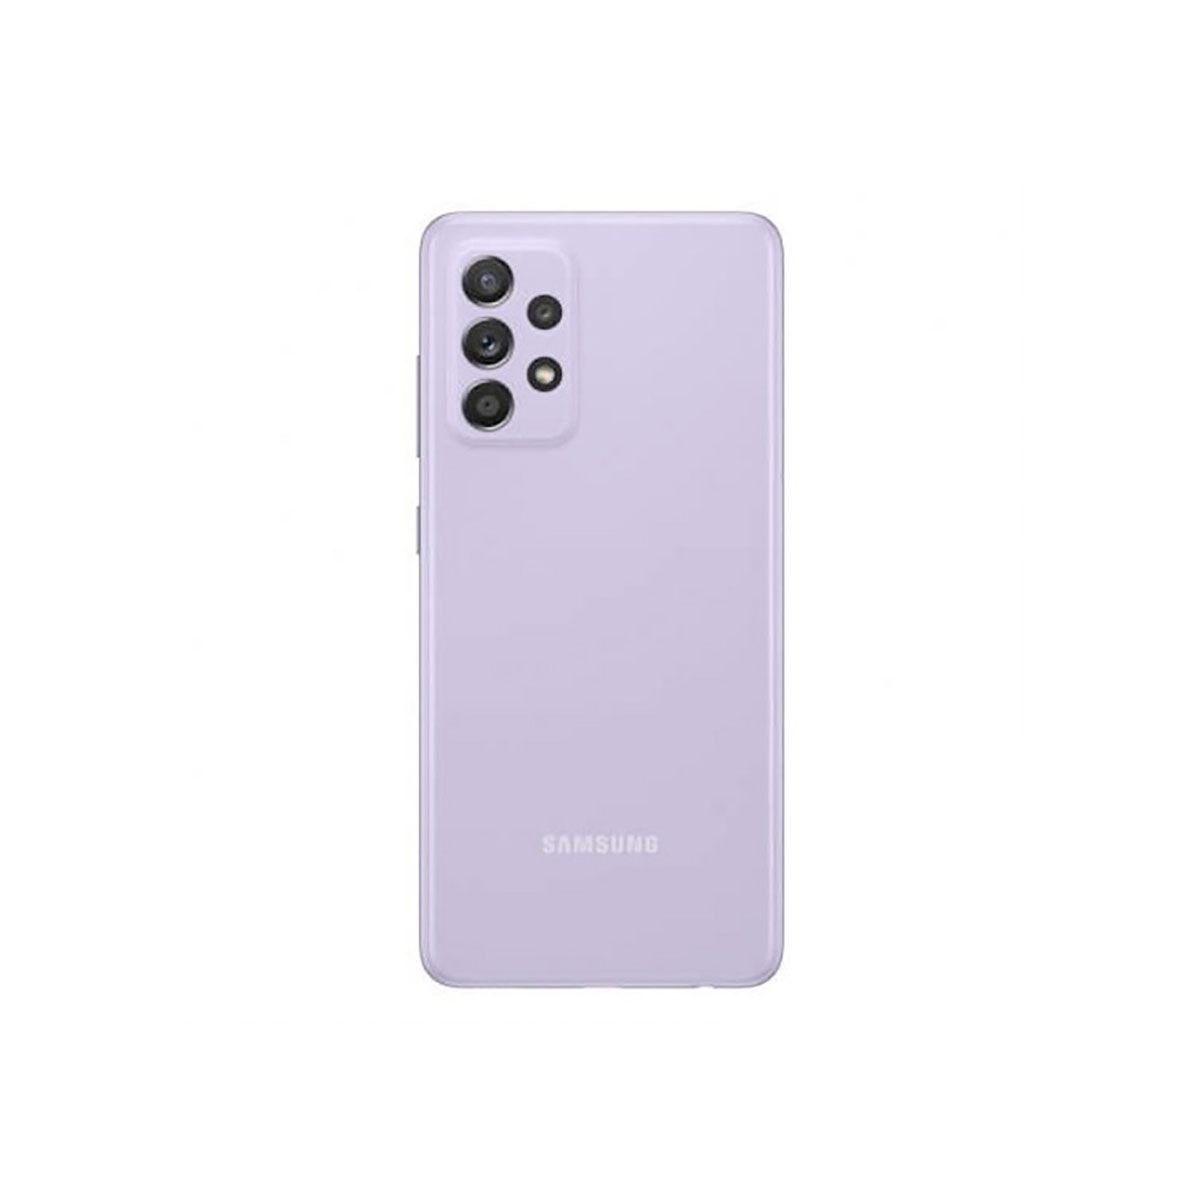 Samsung Galaxy A52 5G 6GB/128GB Purple (Awesome Violet) Dual SIM A526B